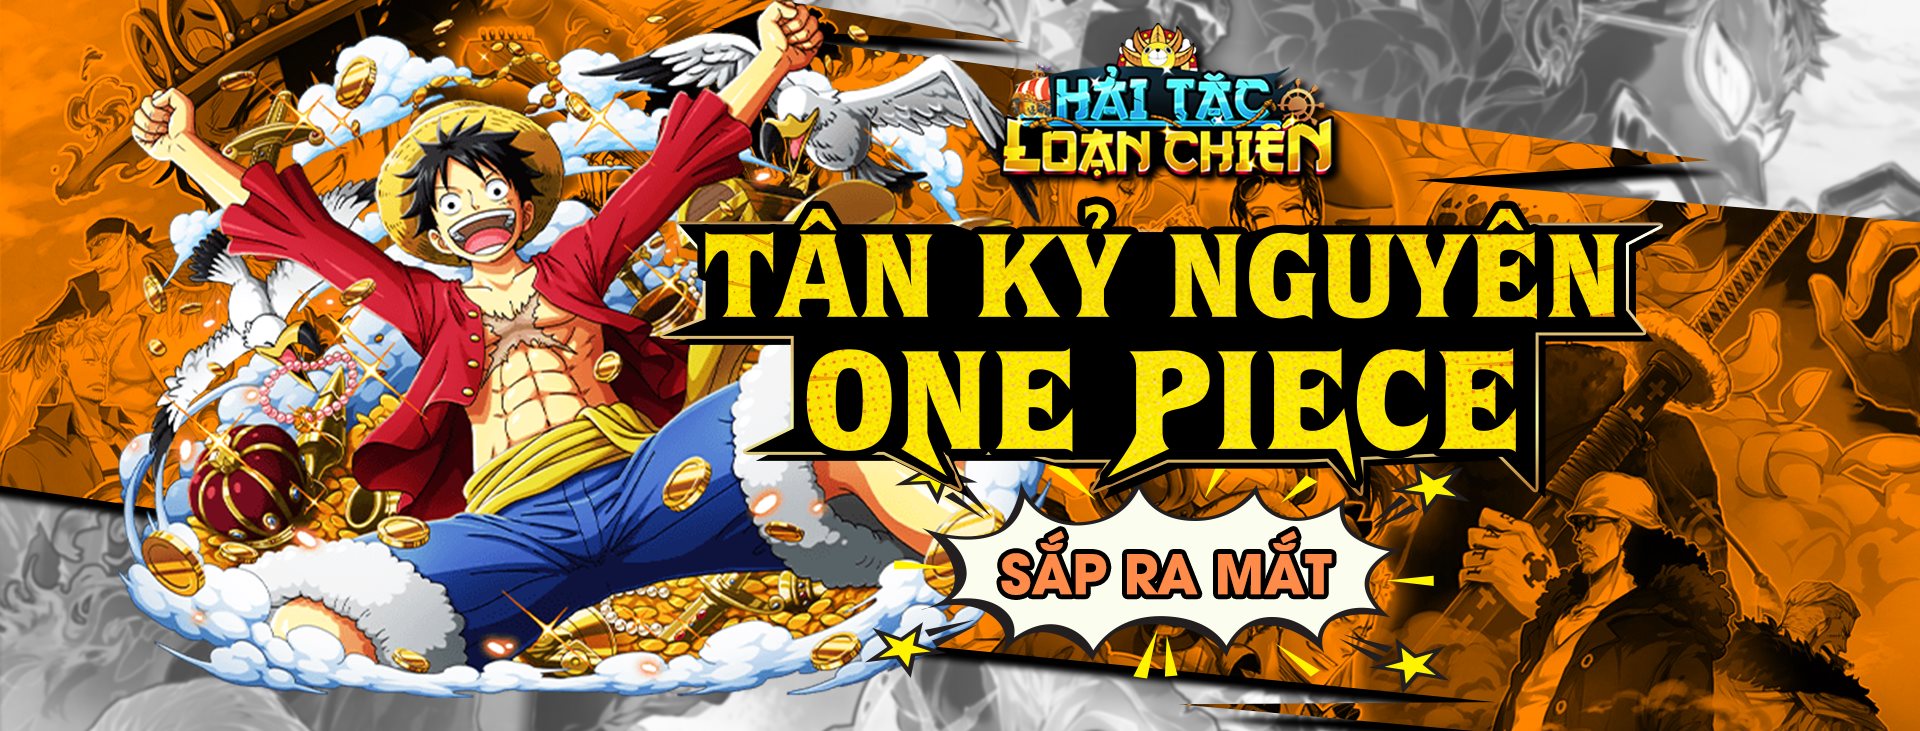 Hải Tặc Loạn Chiến One Piece Chibi: Hải Tặc Loạn Chiến One Piece Chibi là trò chơi chiến thuật ngoài khơi độc đáo và hấp dẫn. Bạn sẽ được tự do tham gia vào những trận chiến đầy kịch tính, với những hình ảnh nhân vật chibi đầy màu sắc. Hãy trải nghiệm và tham gia vào những cuộc chiến ngoài khơi đáng nhớ!